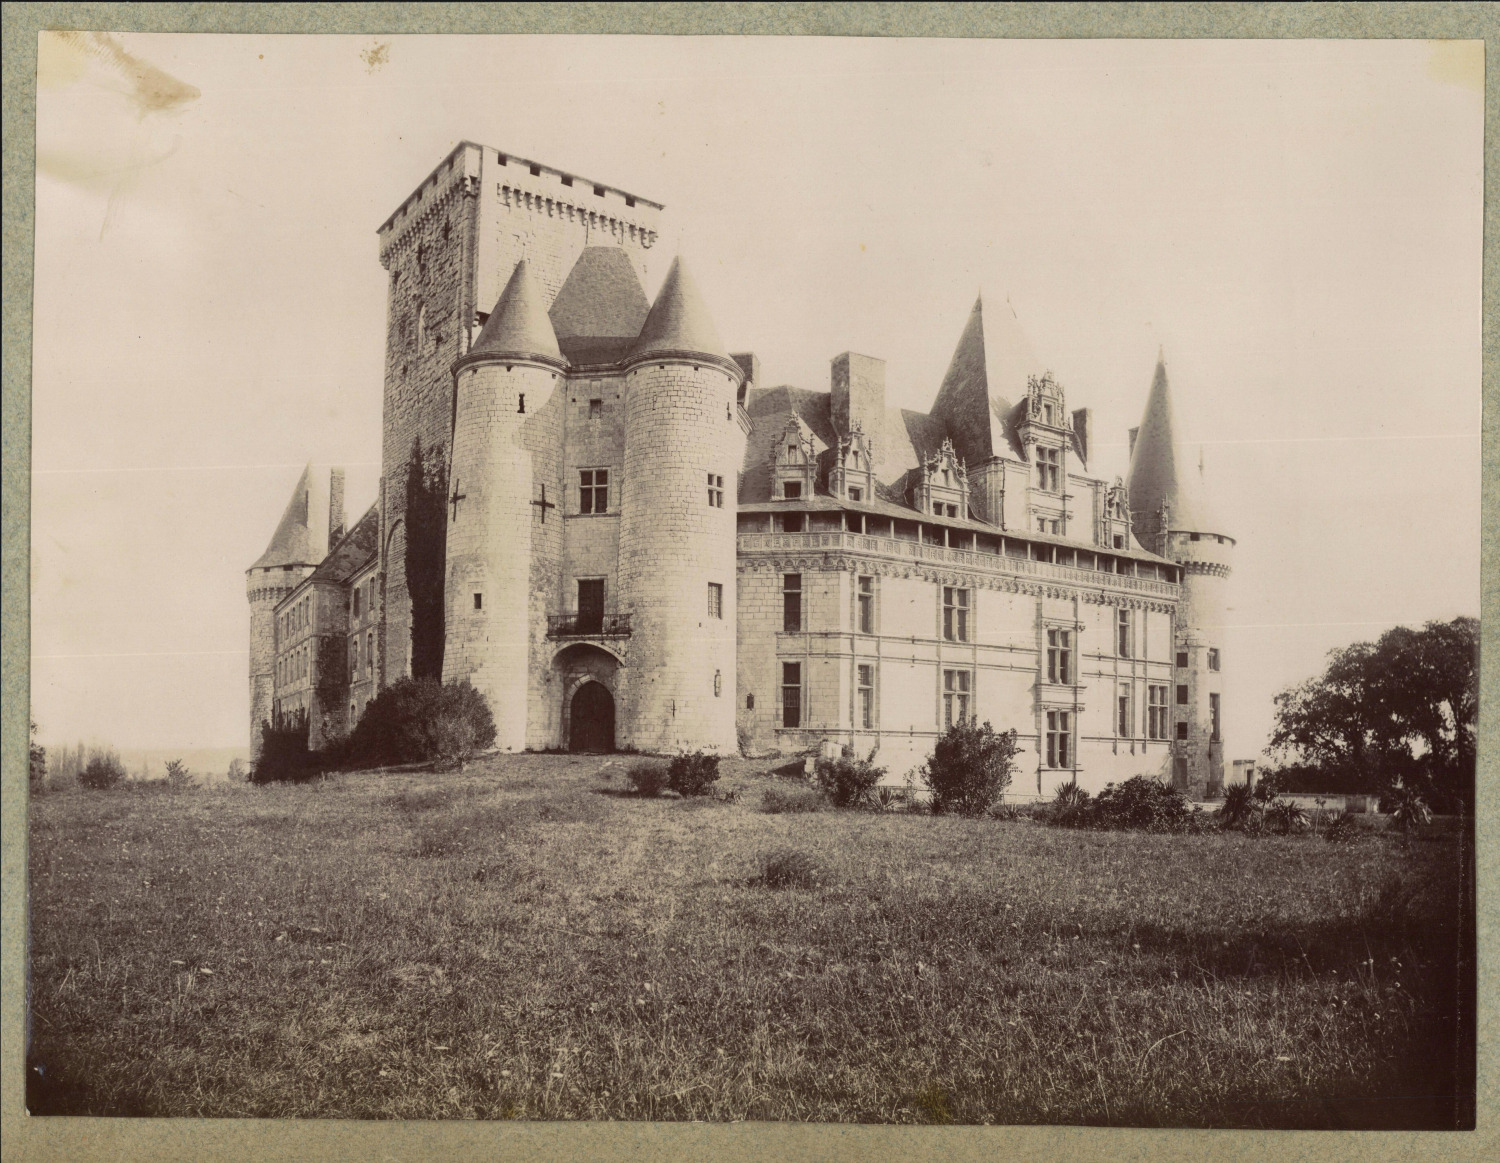 France, La Rochefoucauld-en-Angoumois, Château de La Rochefoucauld vintage album